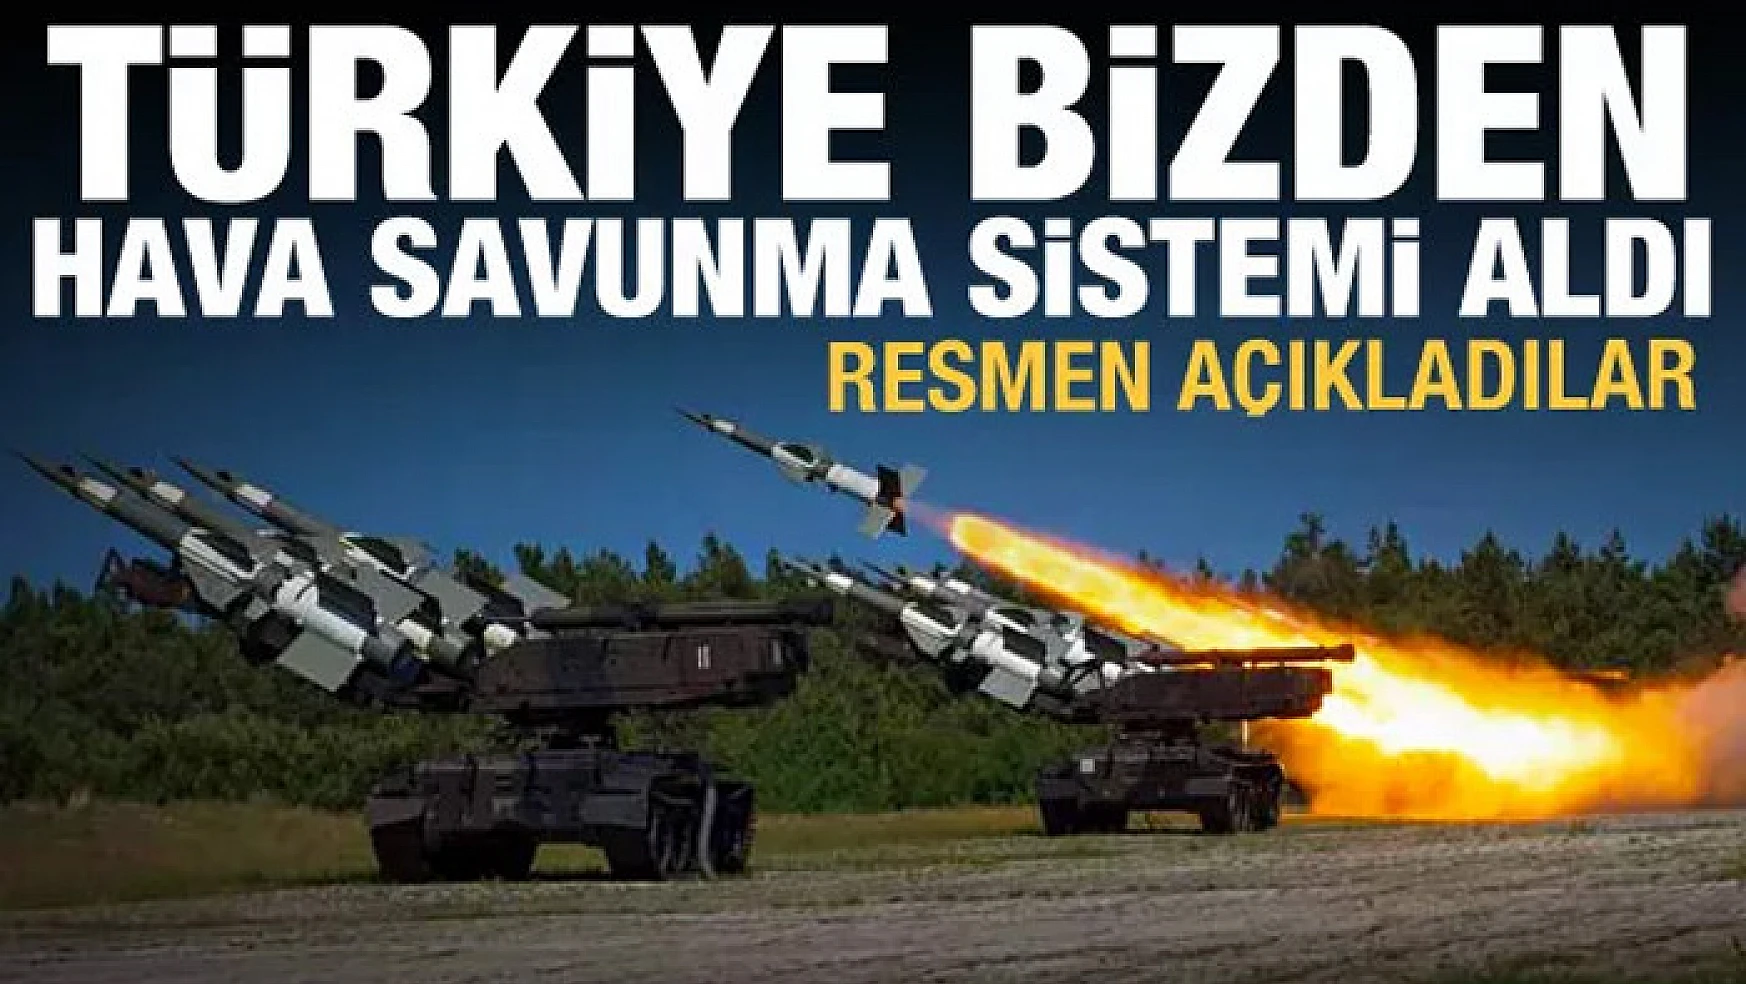 Türkiye bizden hava savunma sistemi aldı